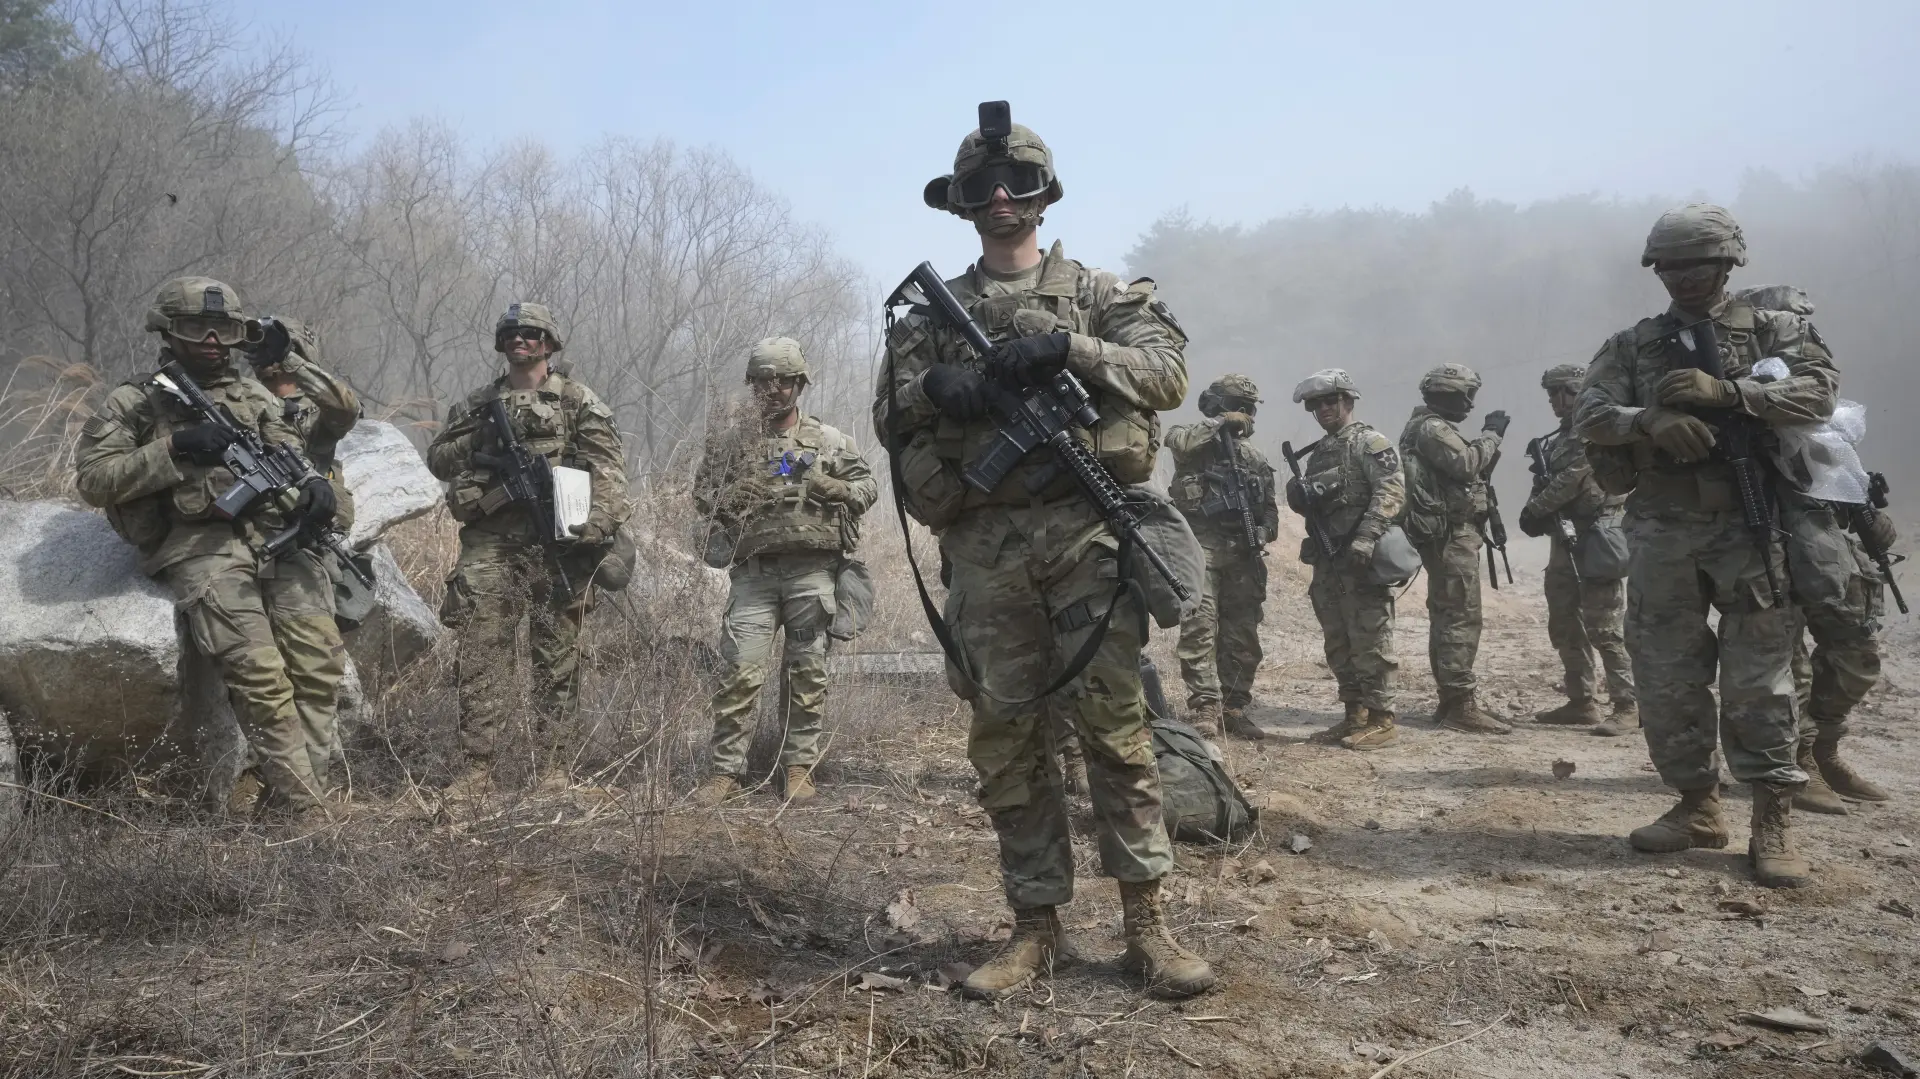 Vojska SAD_Američka vojska_U.S. Army_Foto Tanjug_AP Photo_Ahn Young-joon (2)-6419d1db7c4a4.webp